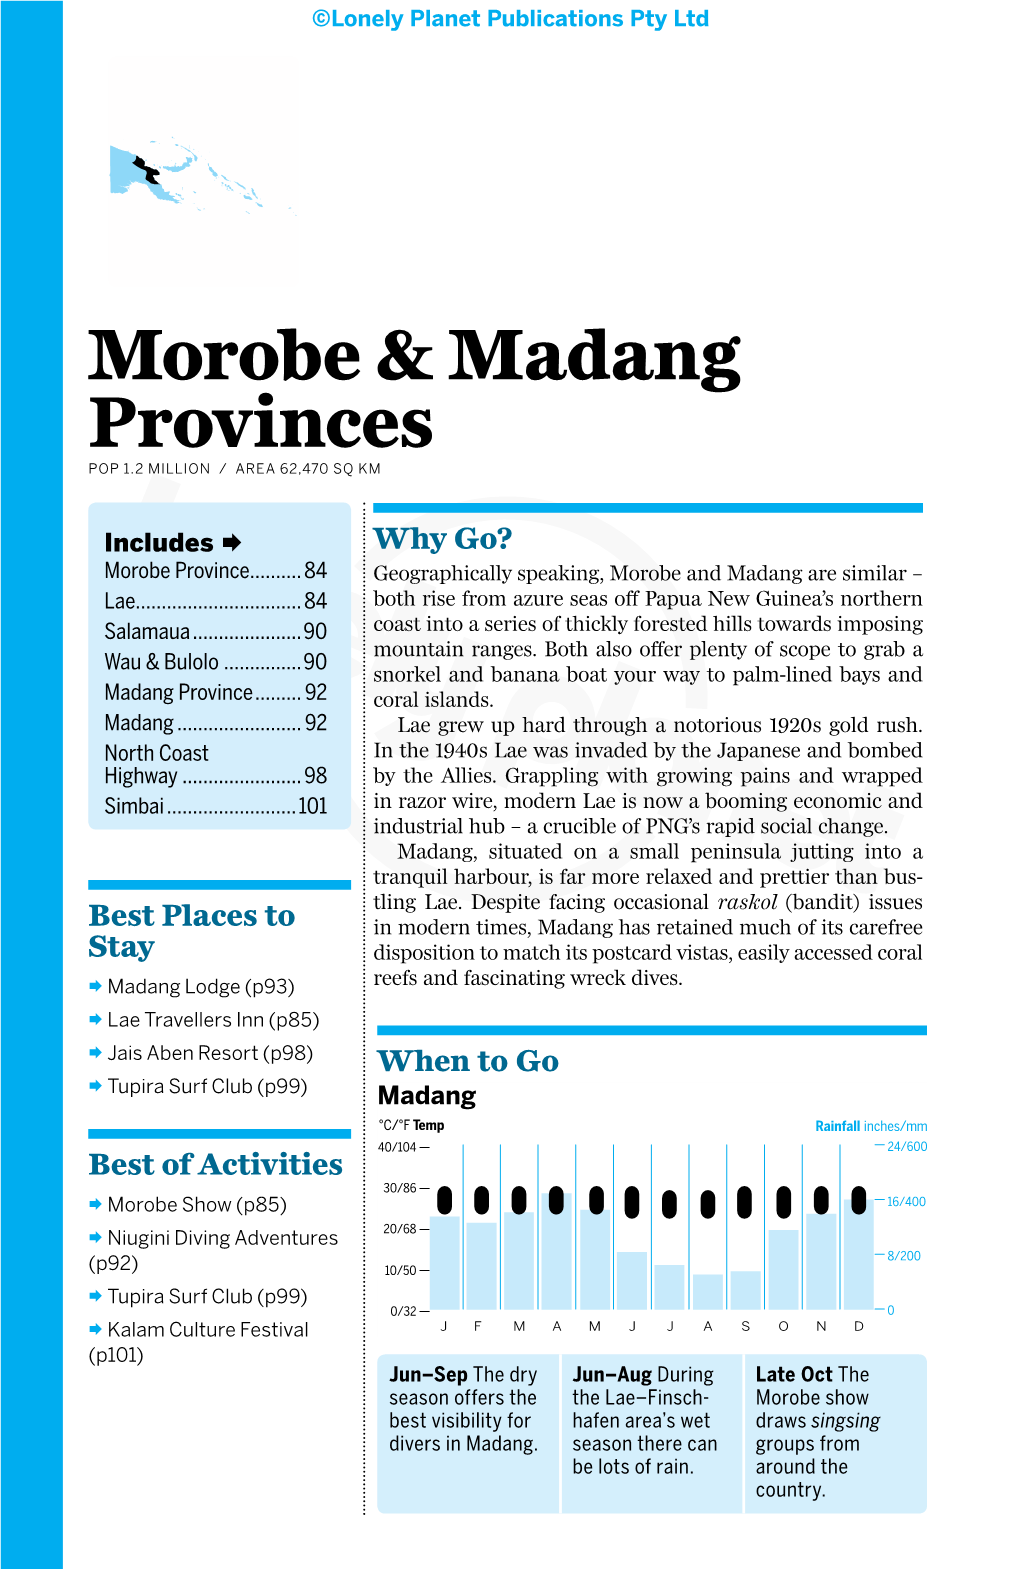 Morobe & Madang Provinces